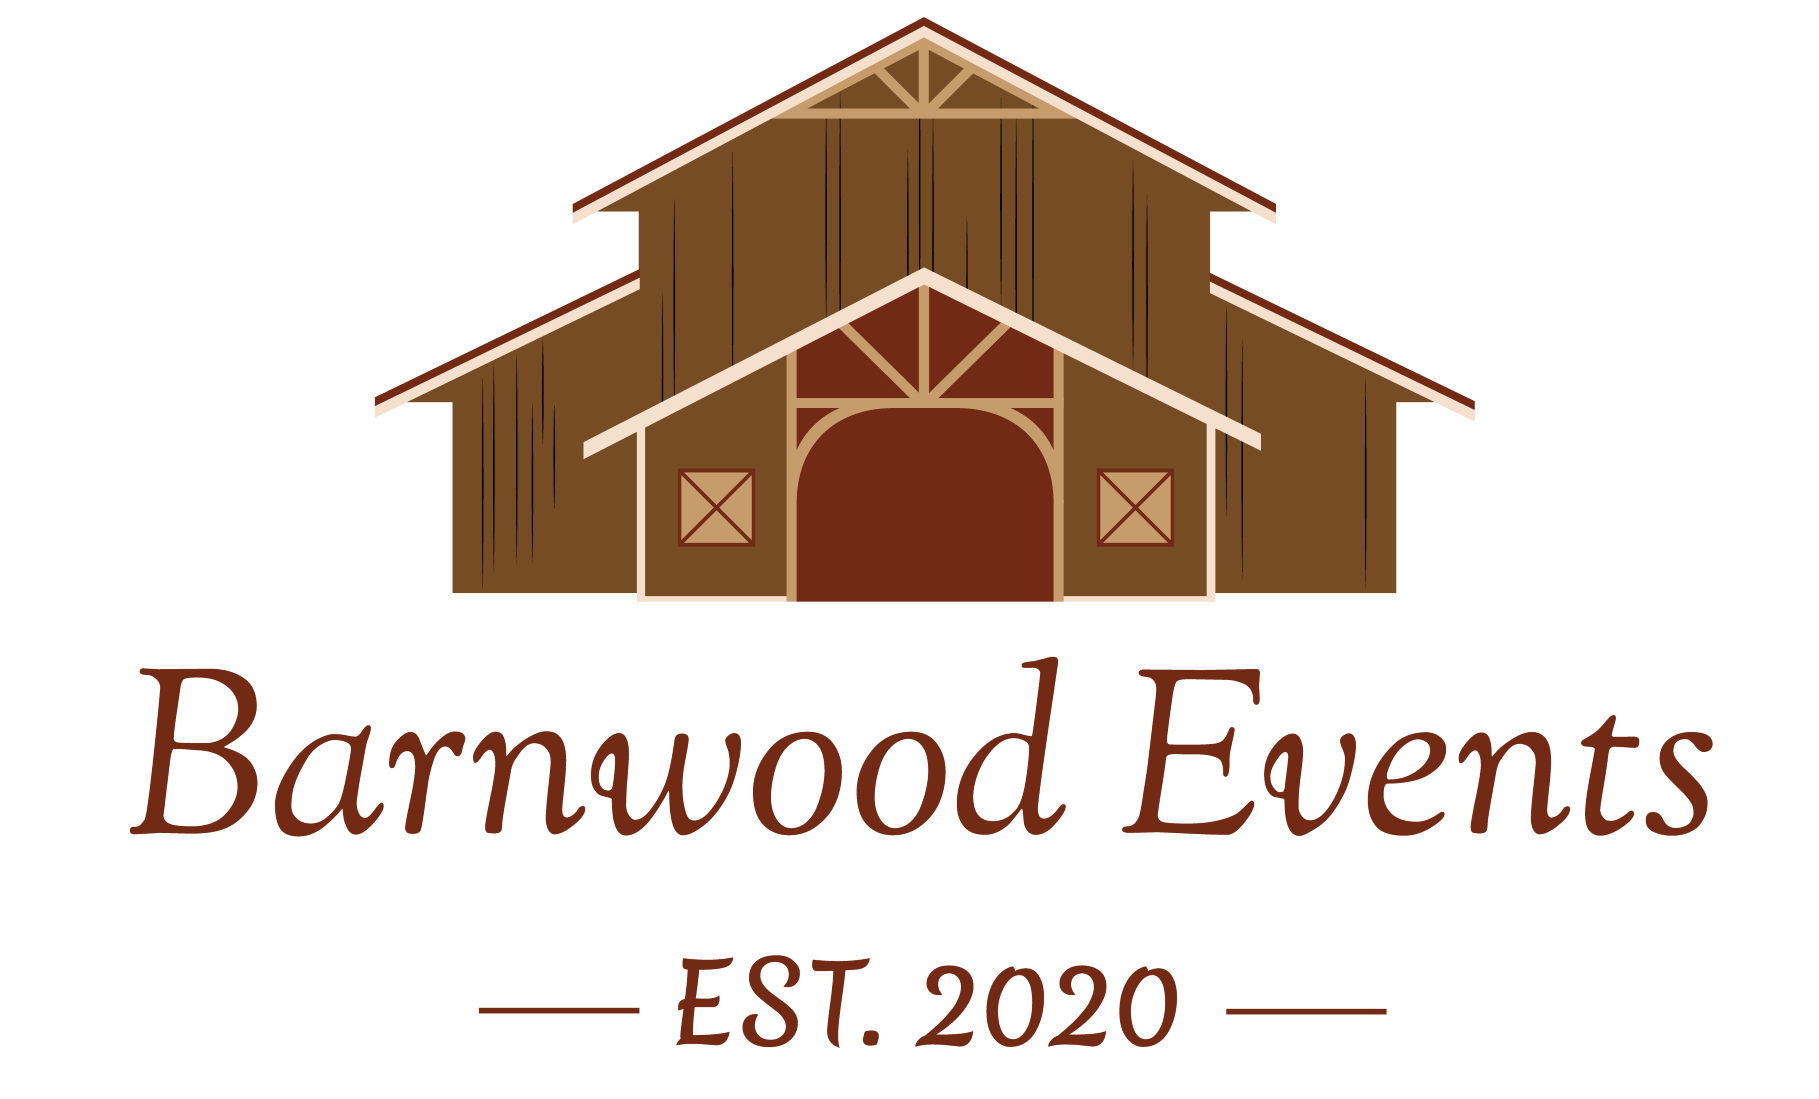 BarnWood Events